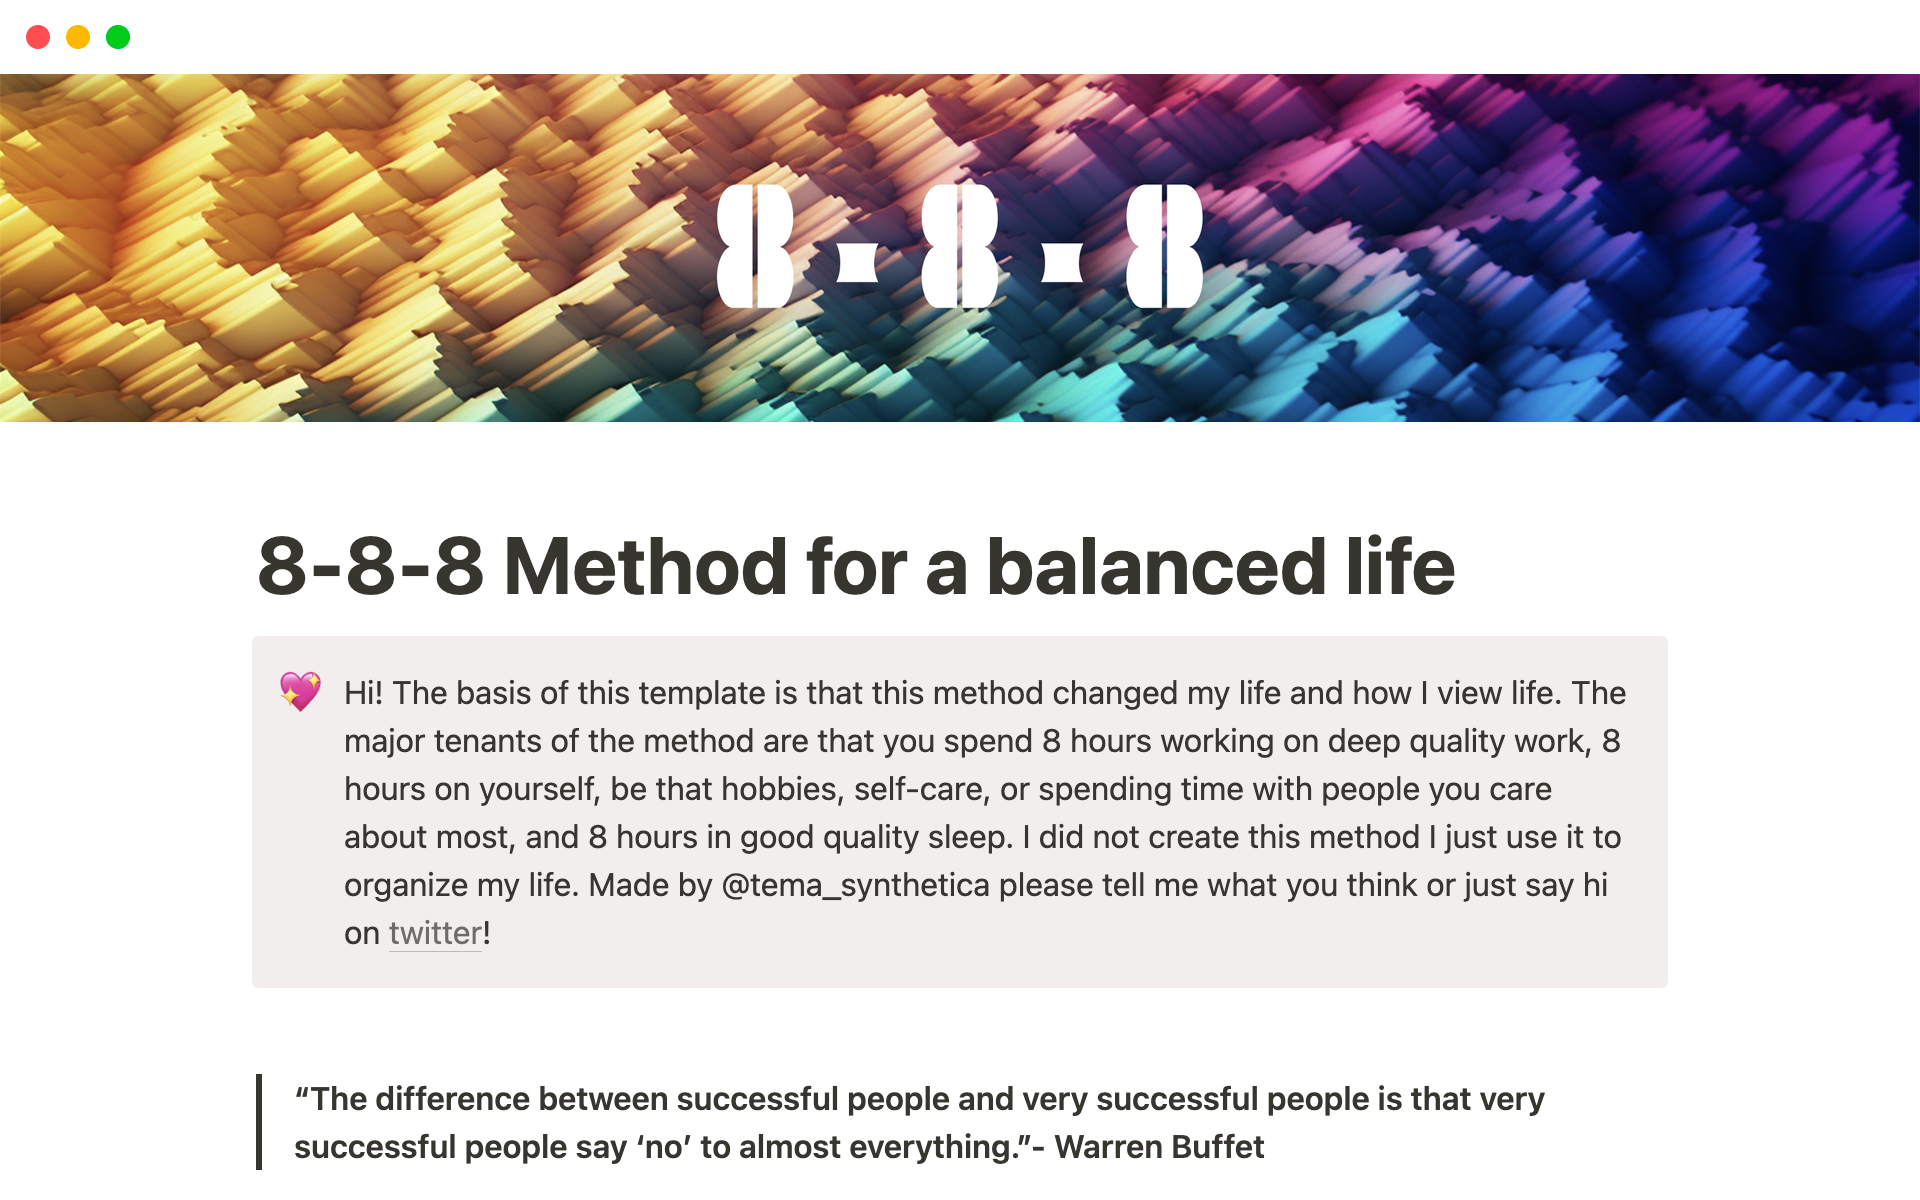 En förhandsgranskning av mallen för 8-8-8 Method for a balanced life